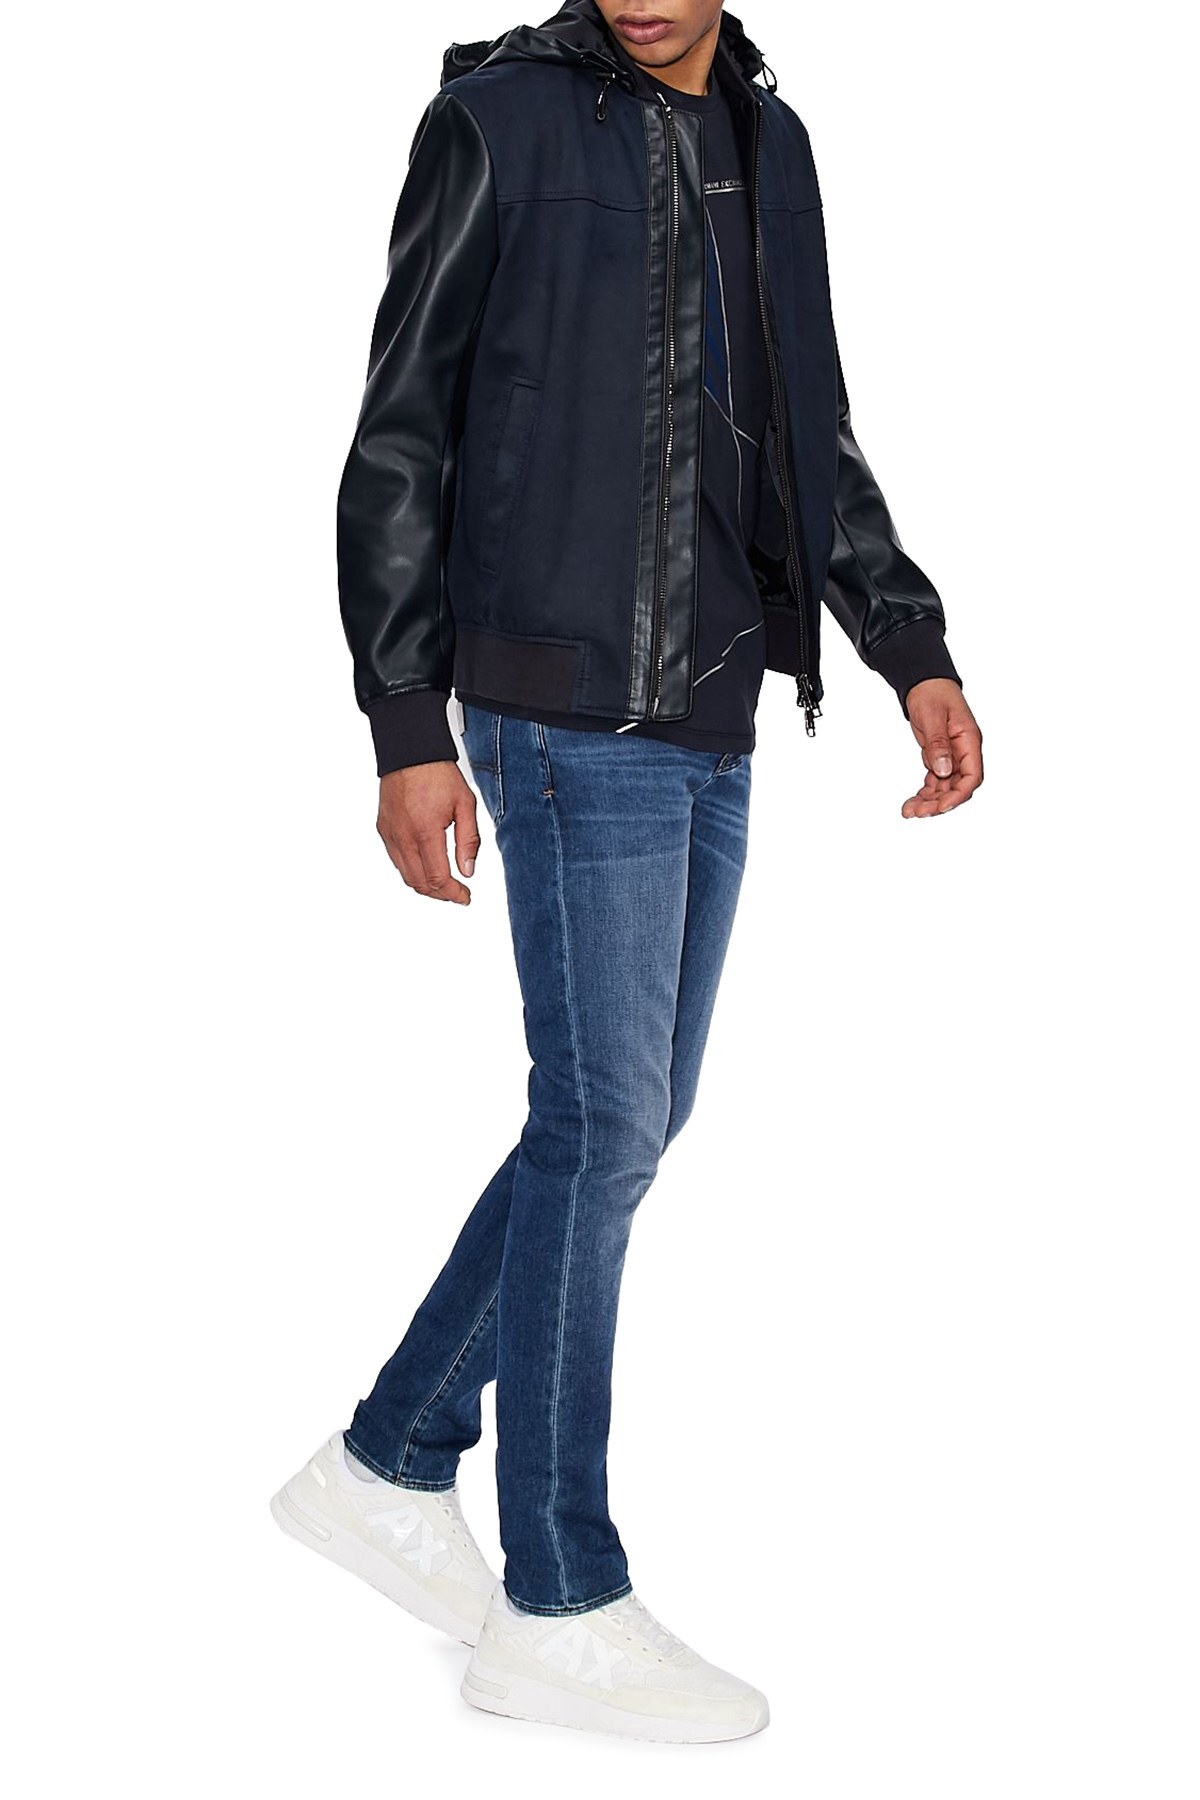 Armani Exchange J14 Jeans Erkek Kot Pantolon 3KZJ14 Z1FNZ 1500 MAVİ